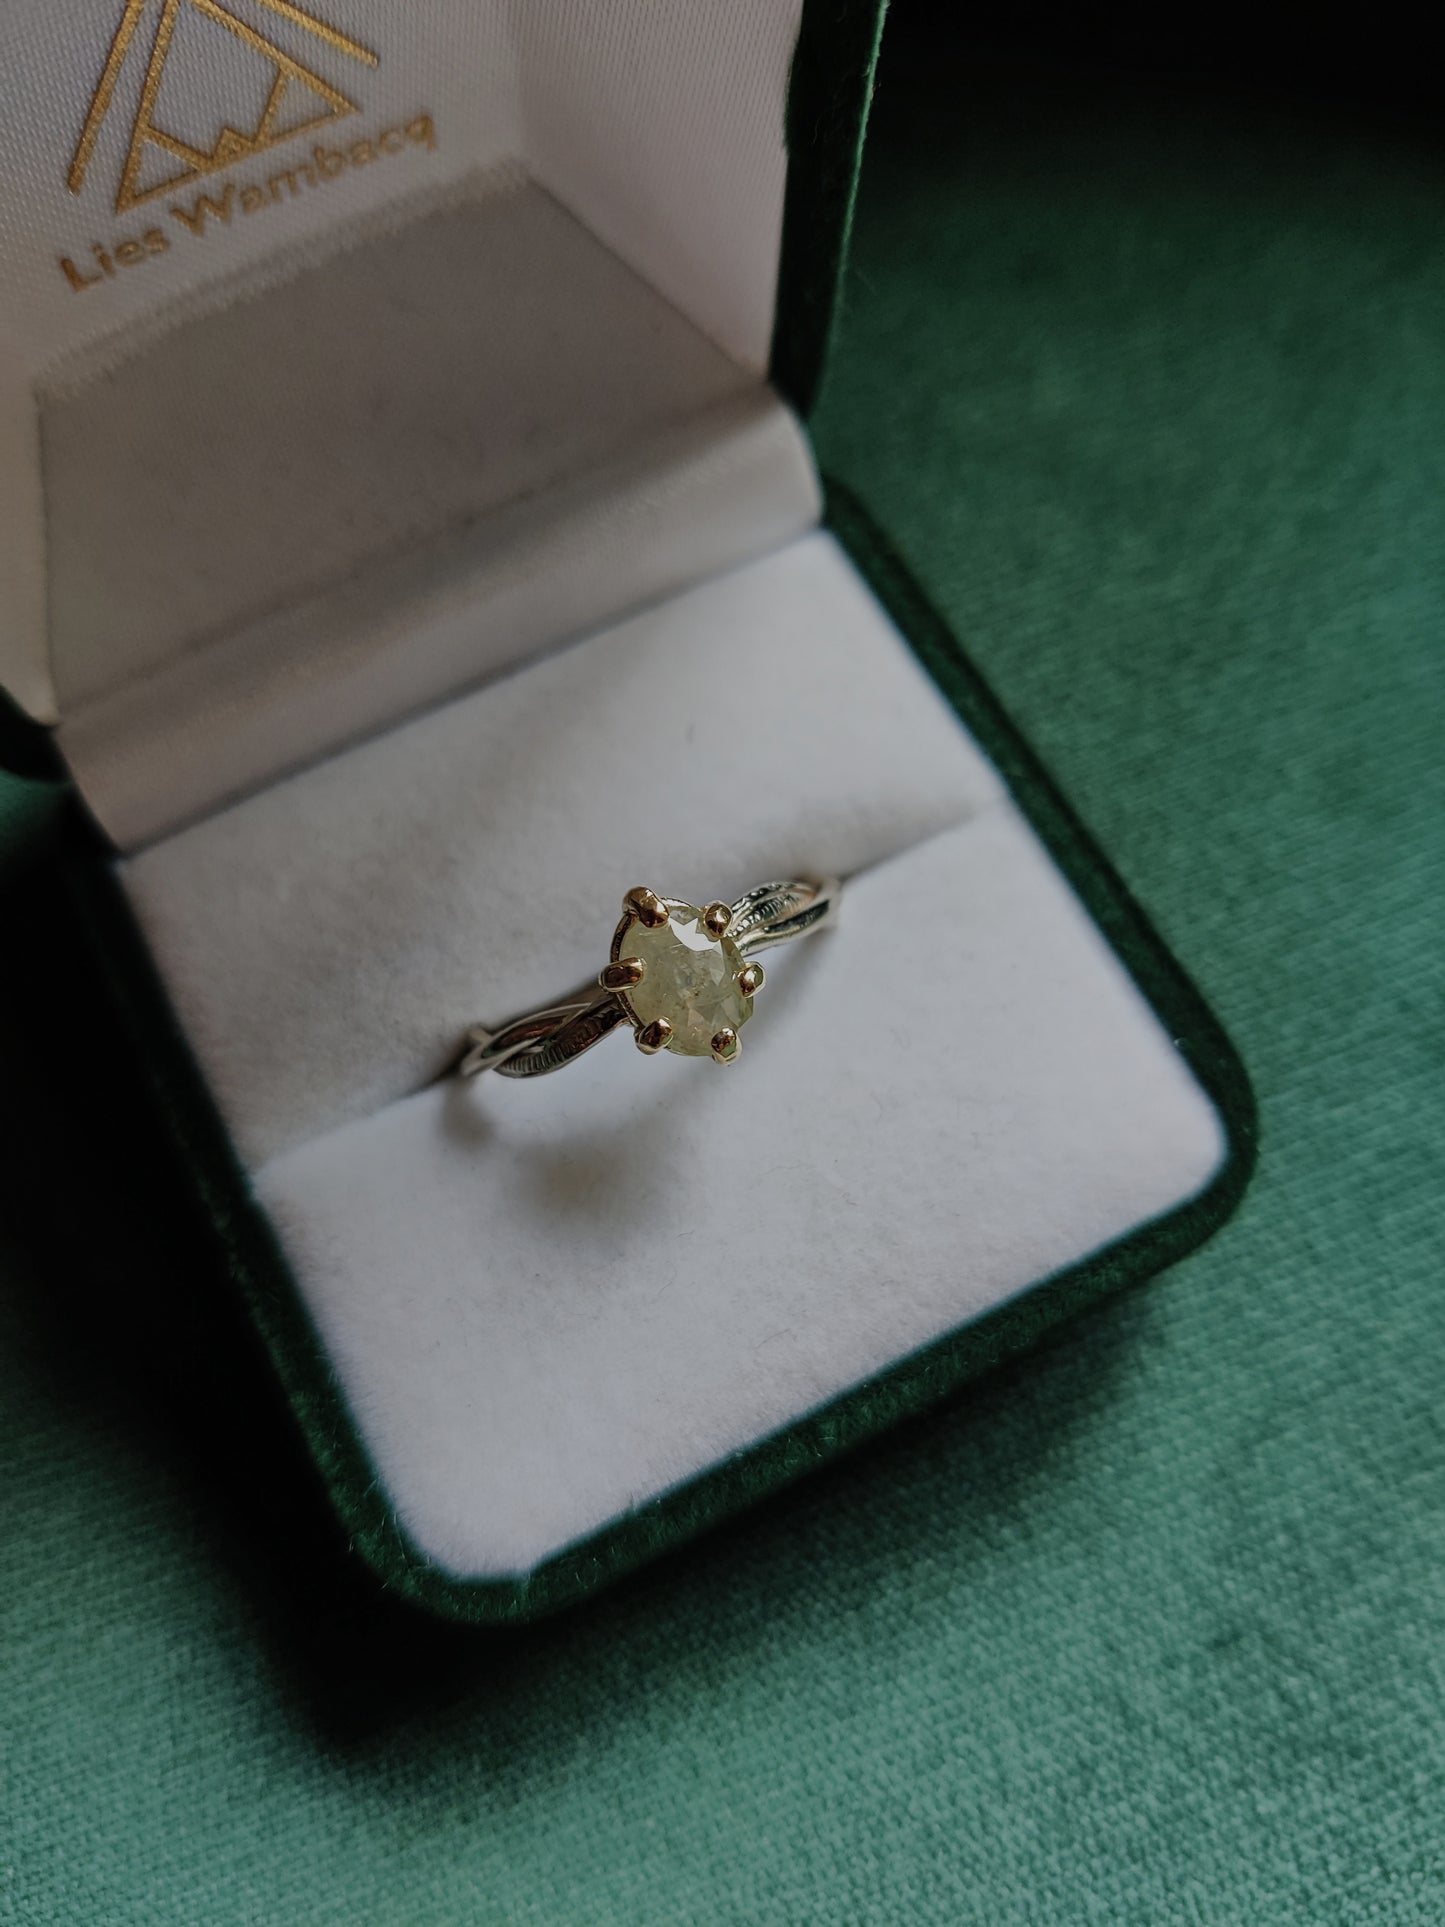 ring met witte ovale diamant is er maar één. Het is een uniek stuk, perfect als alternatieve verlovingsring, of als ring met een bijzondere herinnering. 
Handgemaakt in Leuven